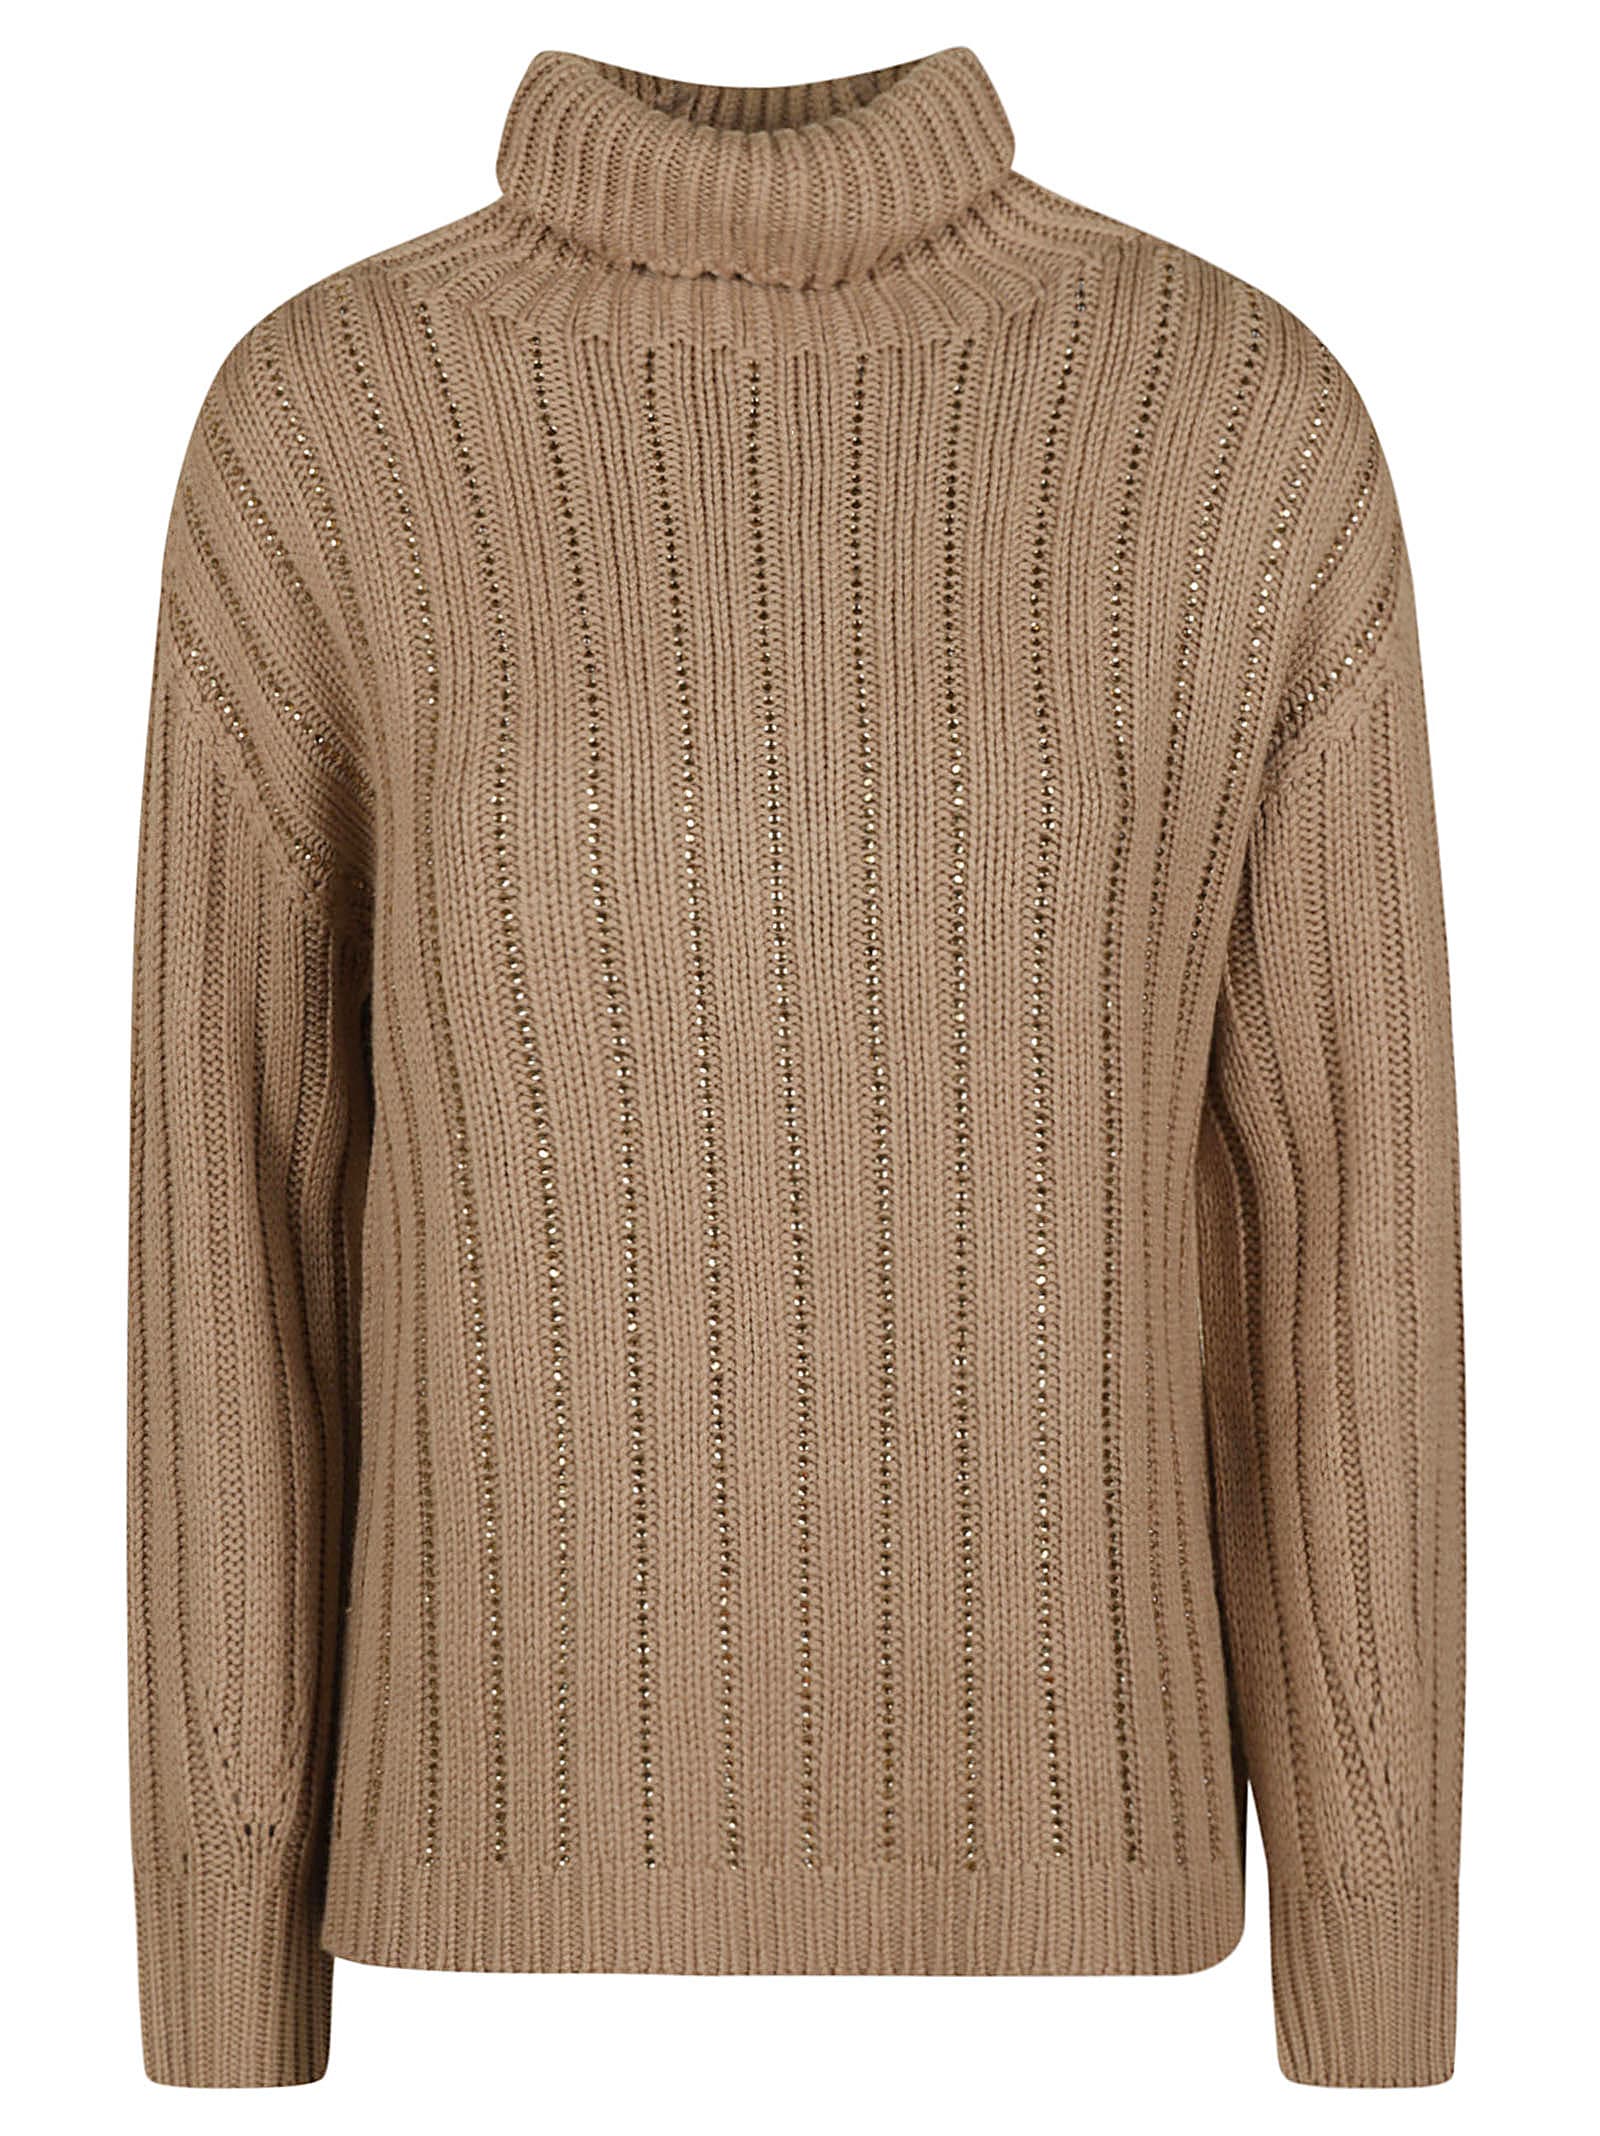 Ermanno Scervino Stripe Patterned Embellished Turtleneck Sweater